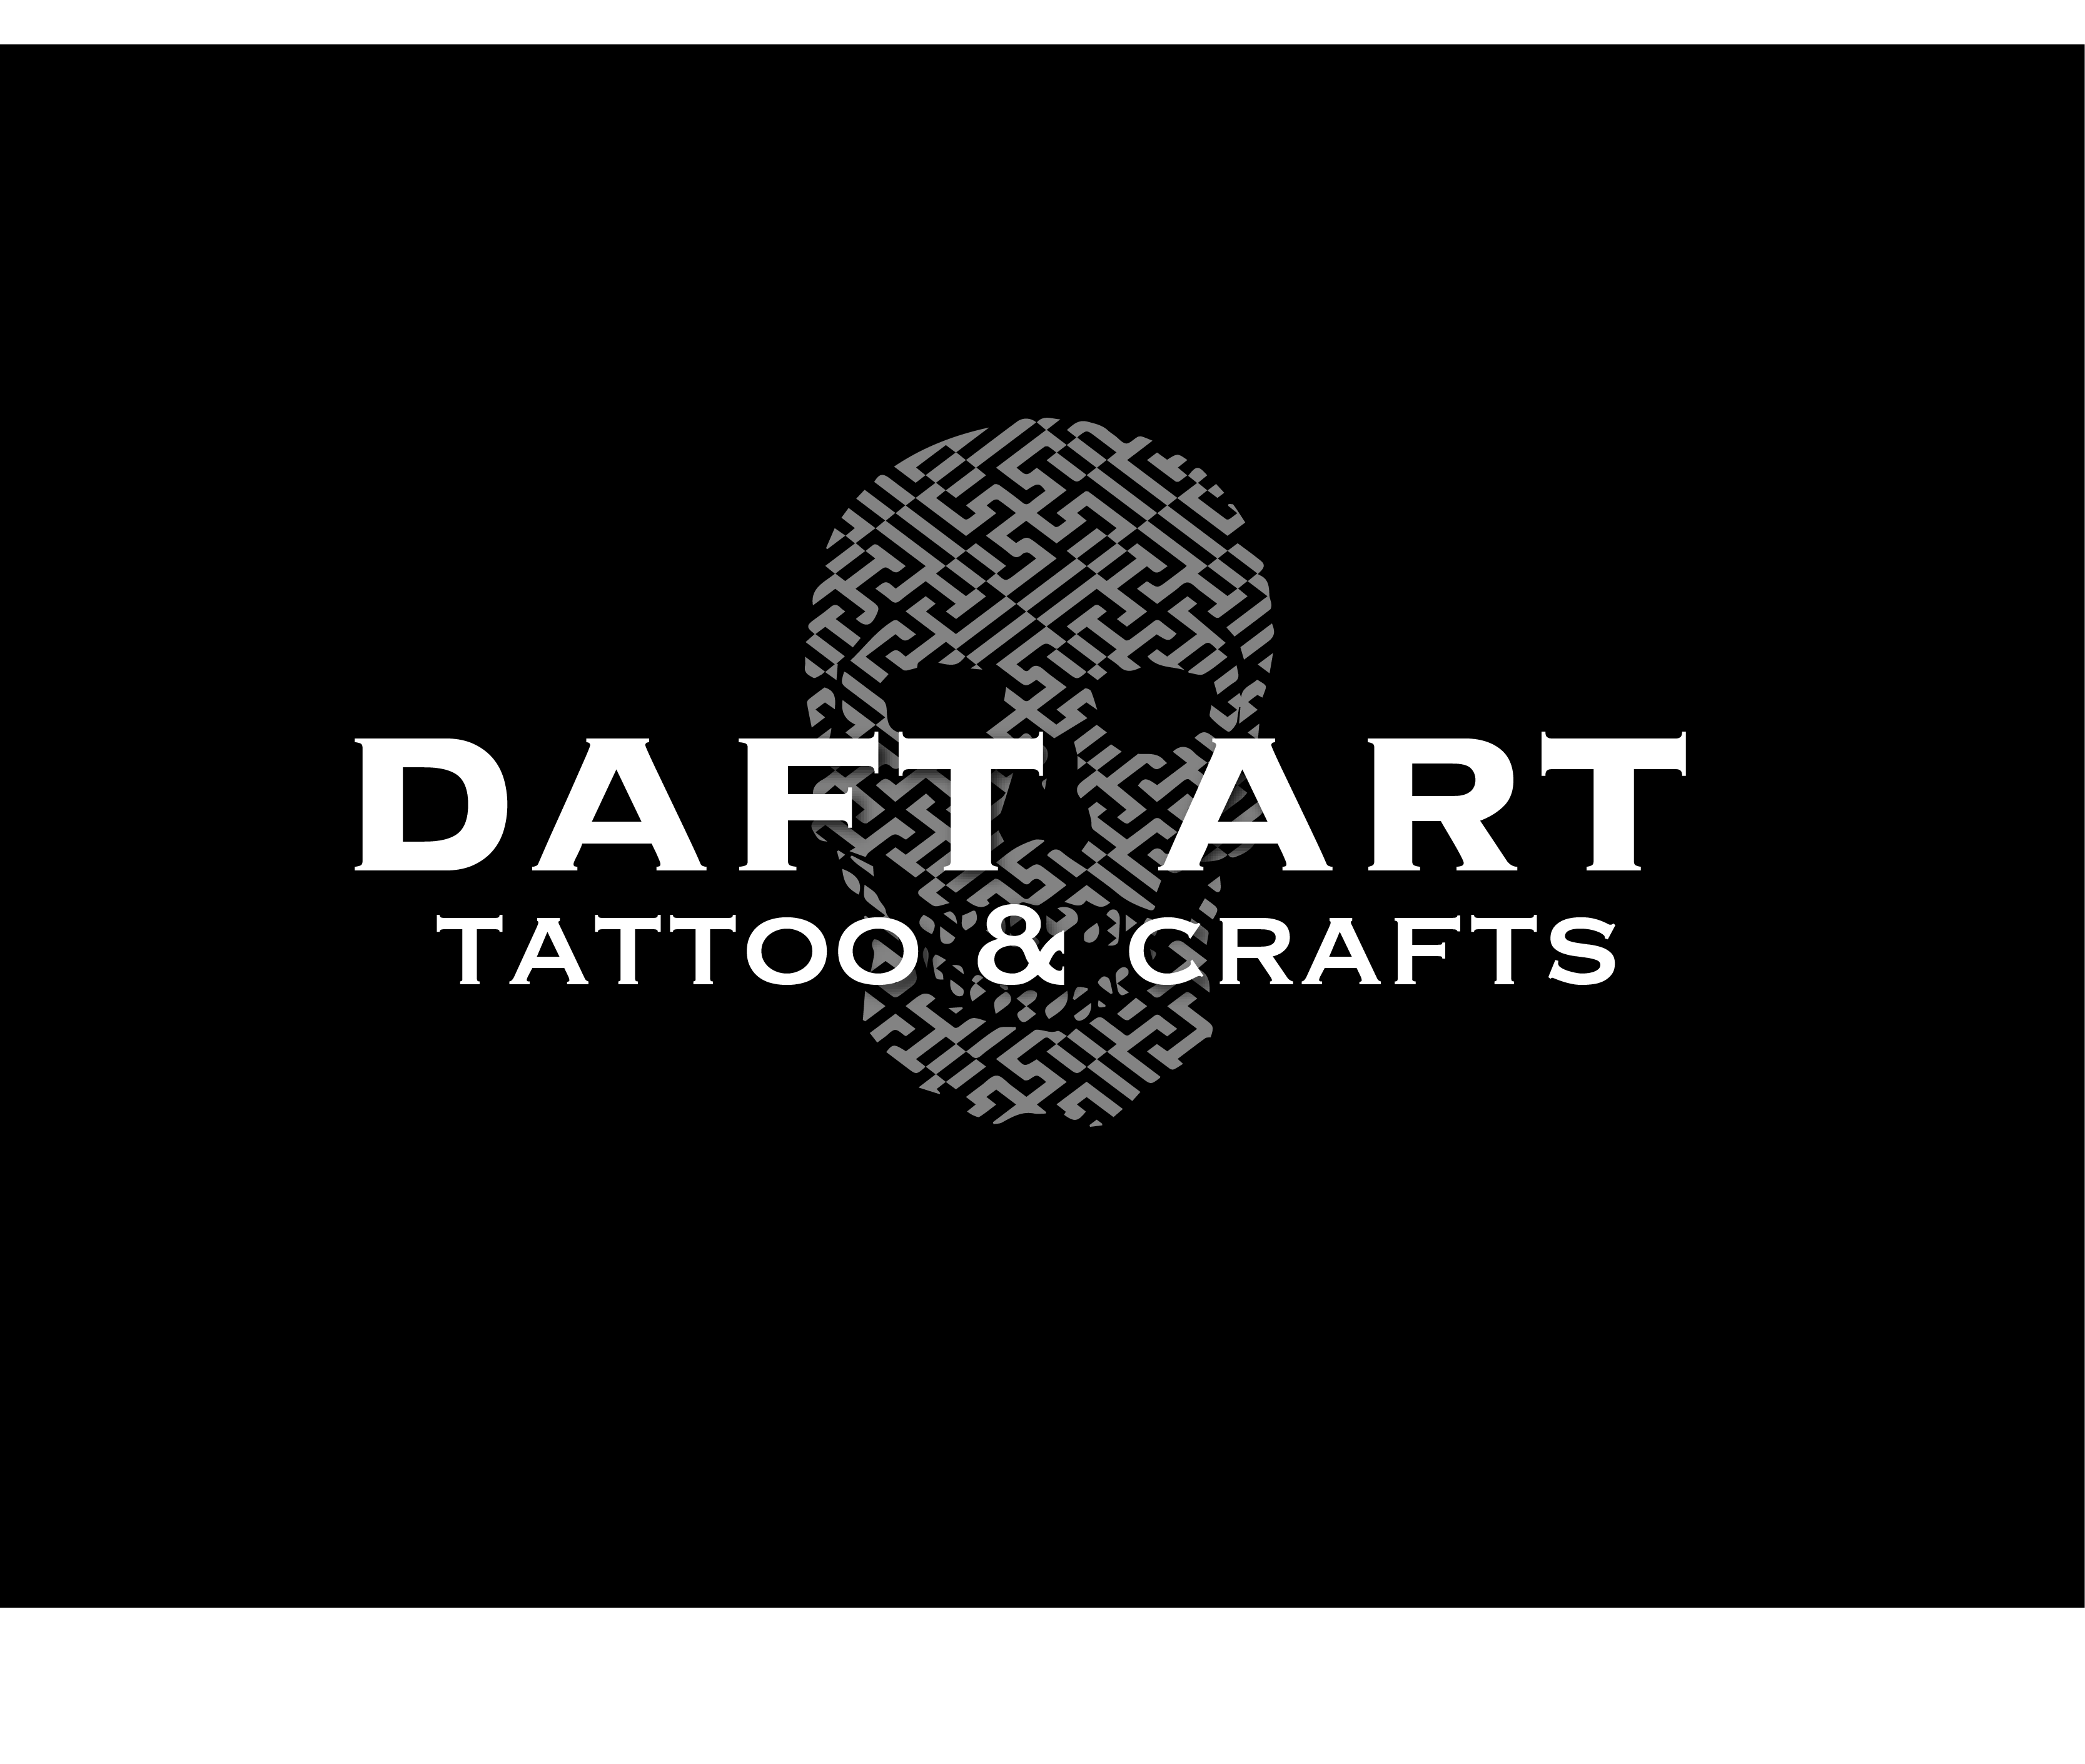 Daft Art Tattoo & Crafts